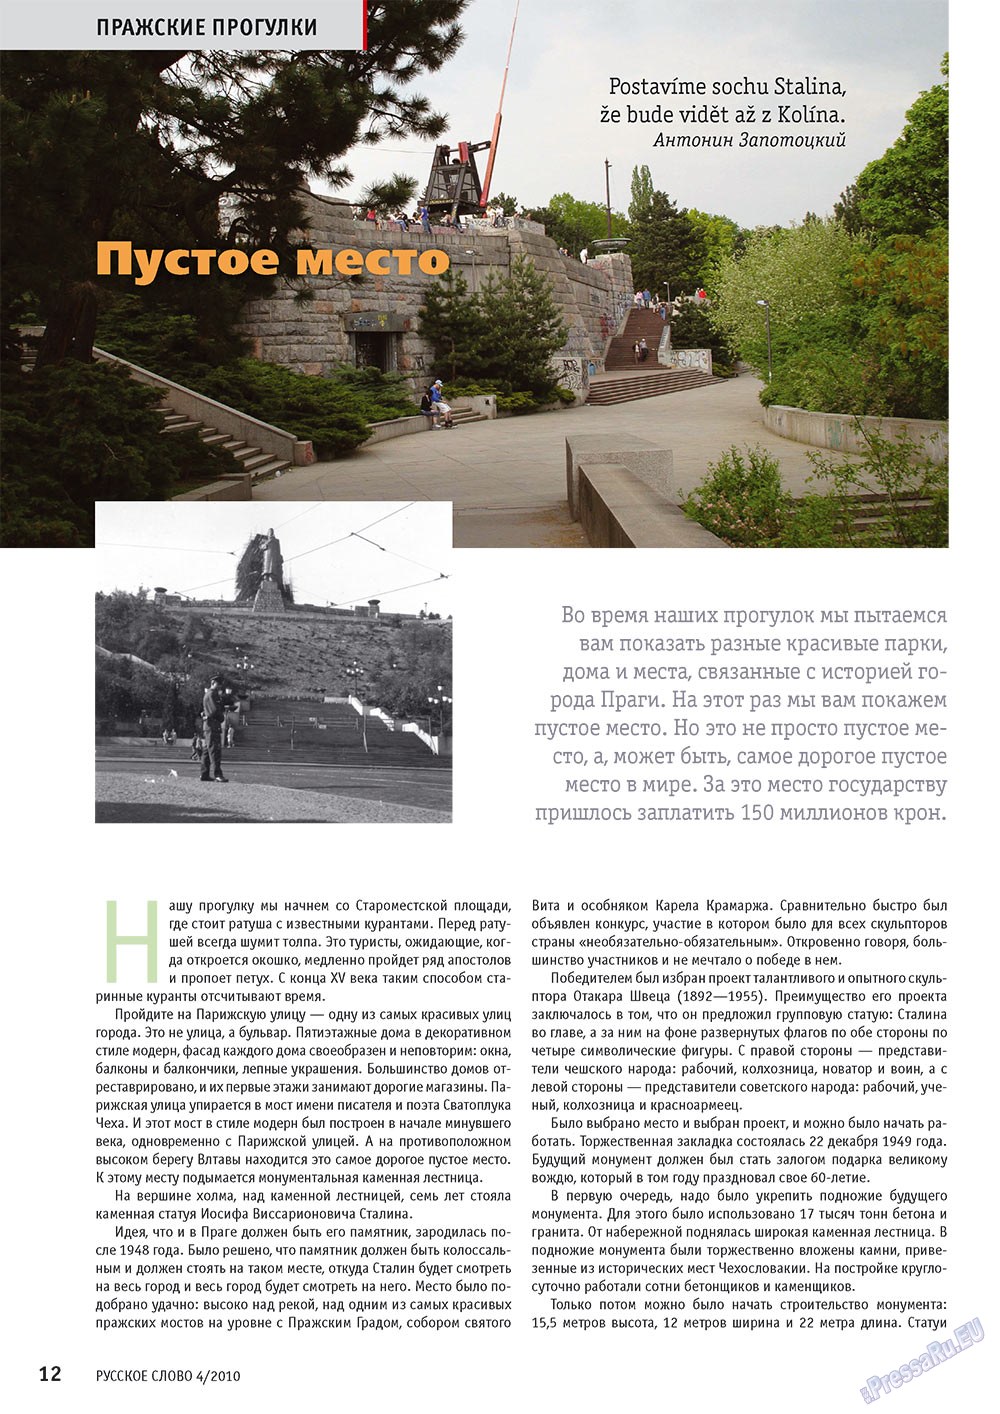 Русское слово, журнал. 2010 №4 стр.14